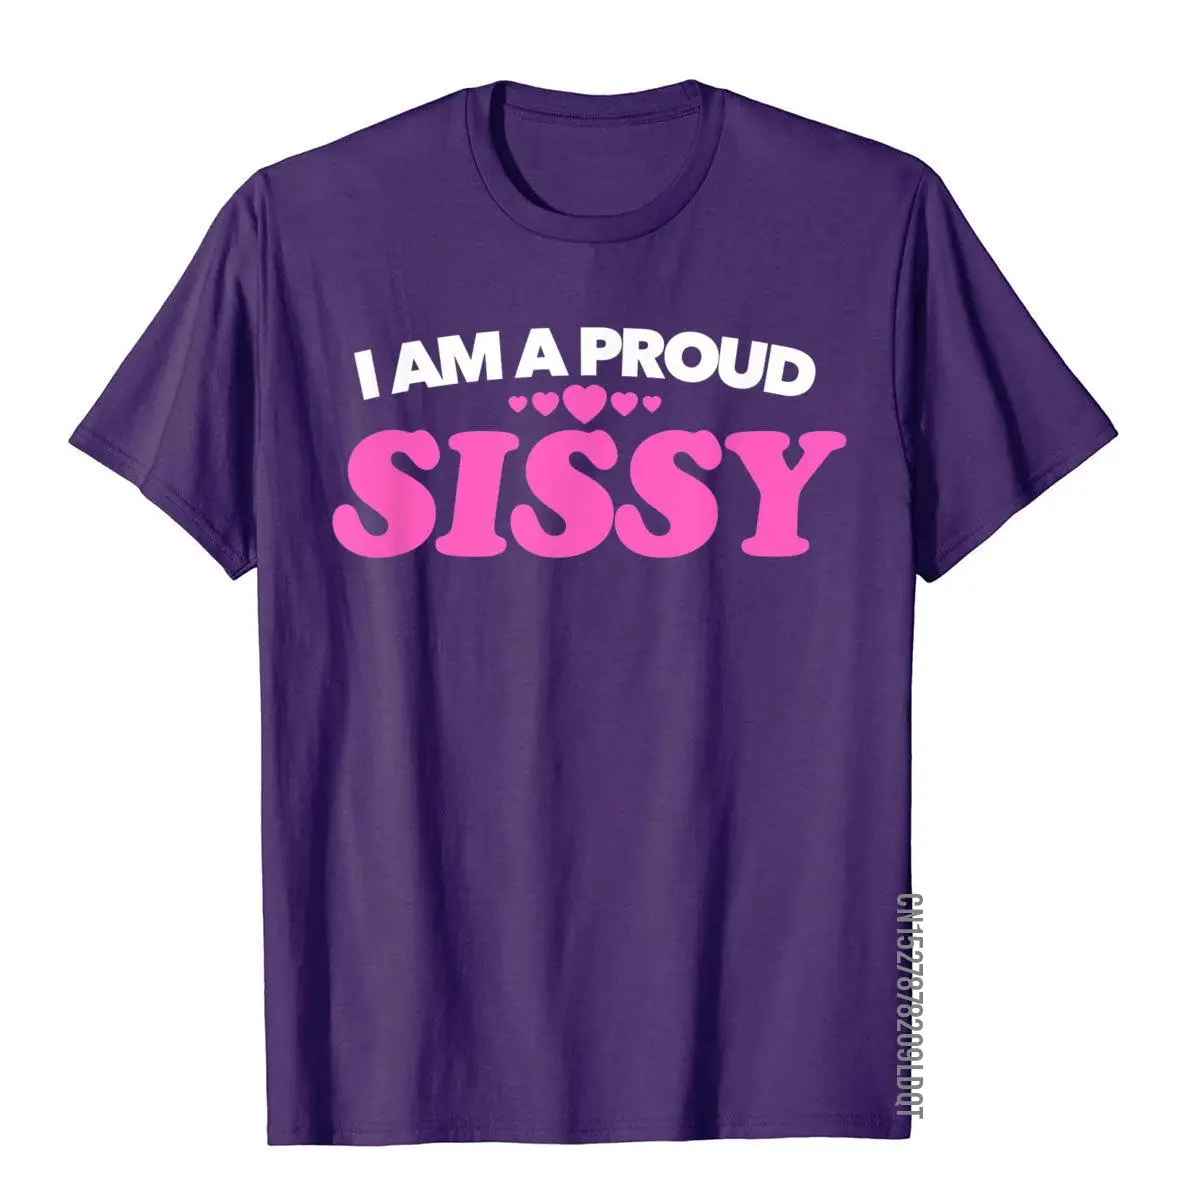 Футболка I Am A Proud Sissy - Подарок Love Pride, футболка с фанковым принтом, Хлопковые мужские футболки на День рождения